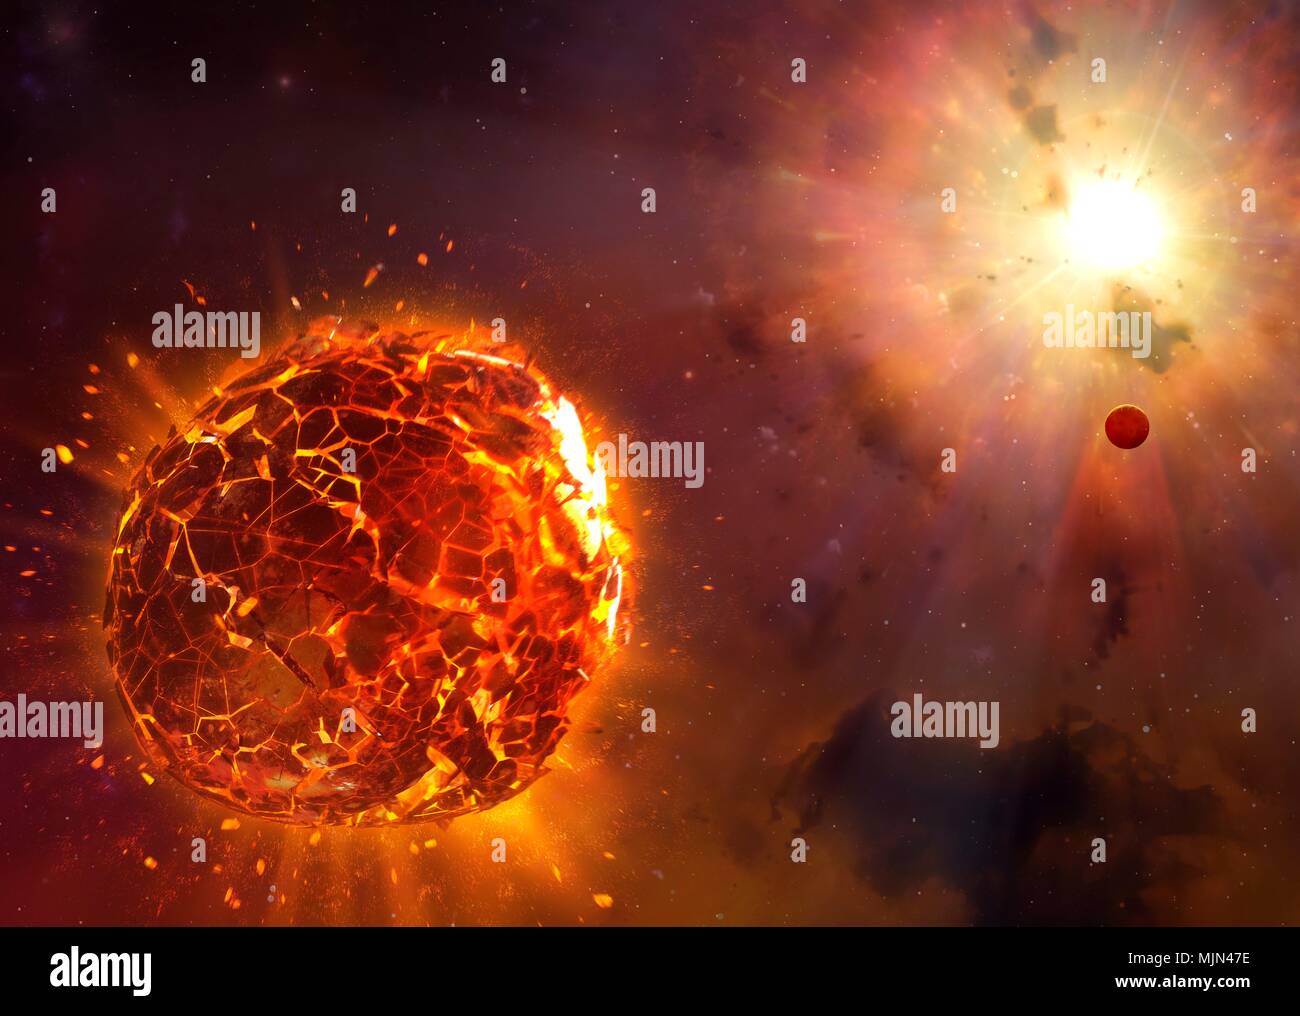 Supernova de détruire la planète, l'illustration. Une planète rocheuse se trouve dans le service de sa star, qui vient de supernova. L'explosion détruit la planète. Banque D'Images